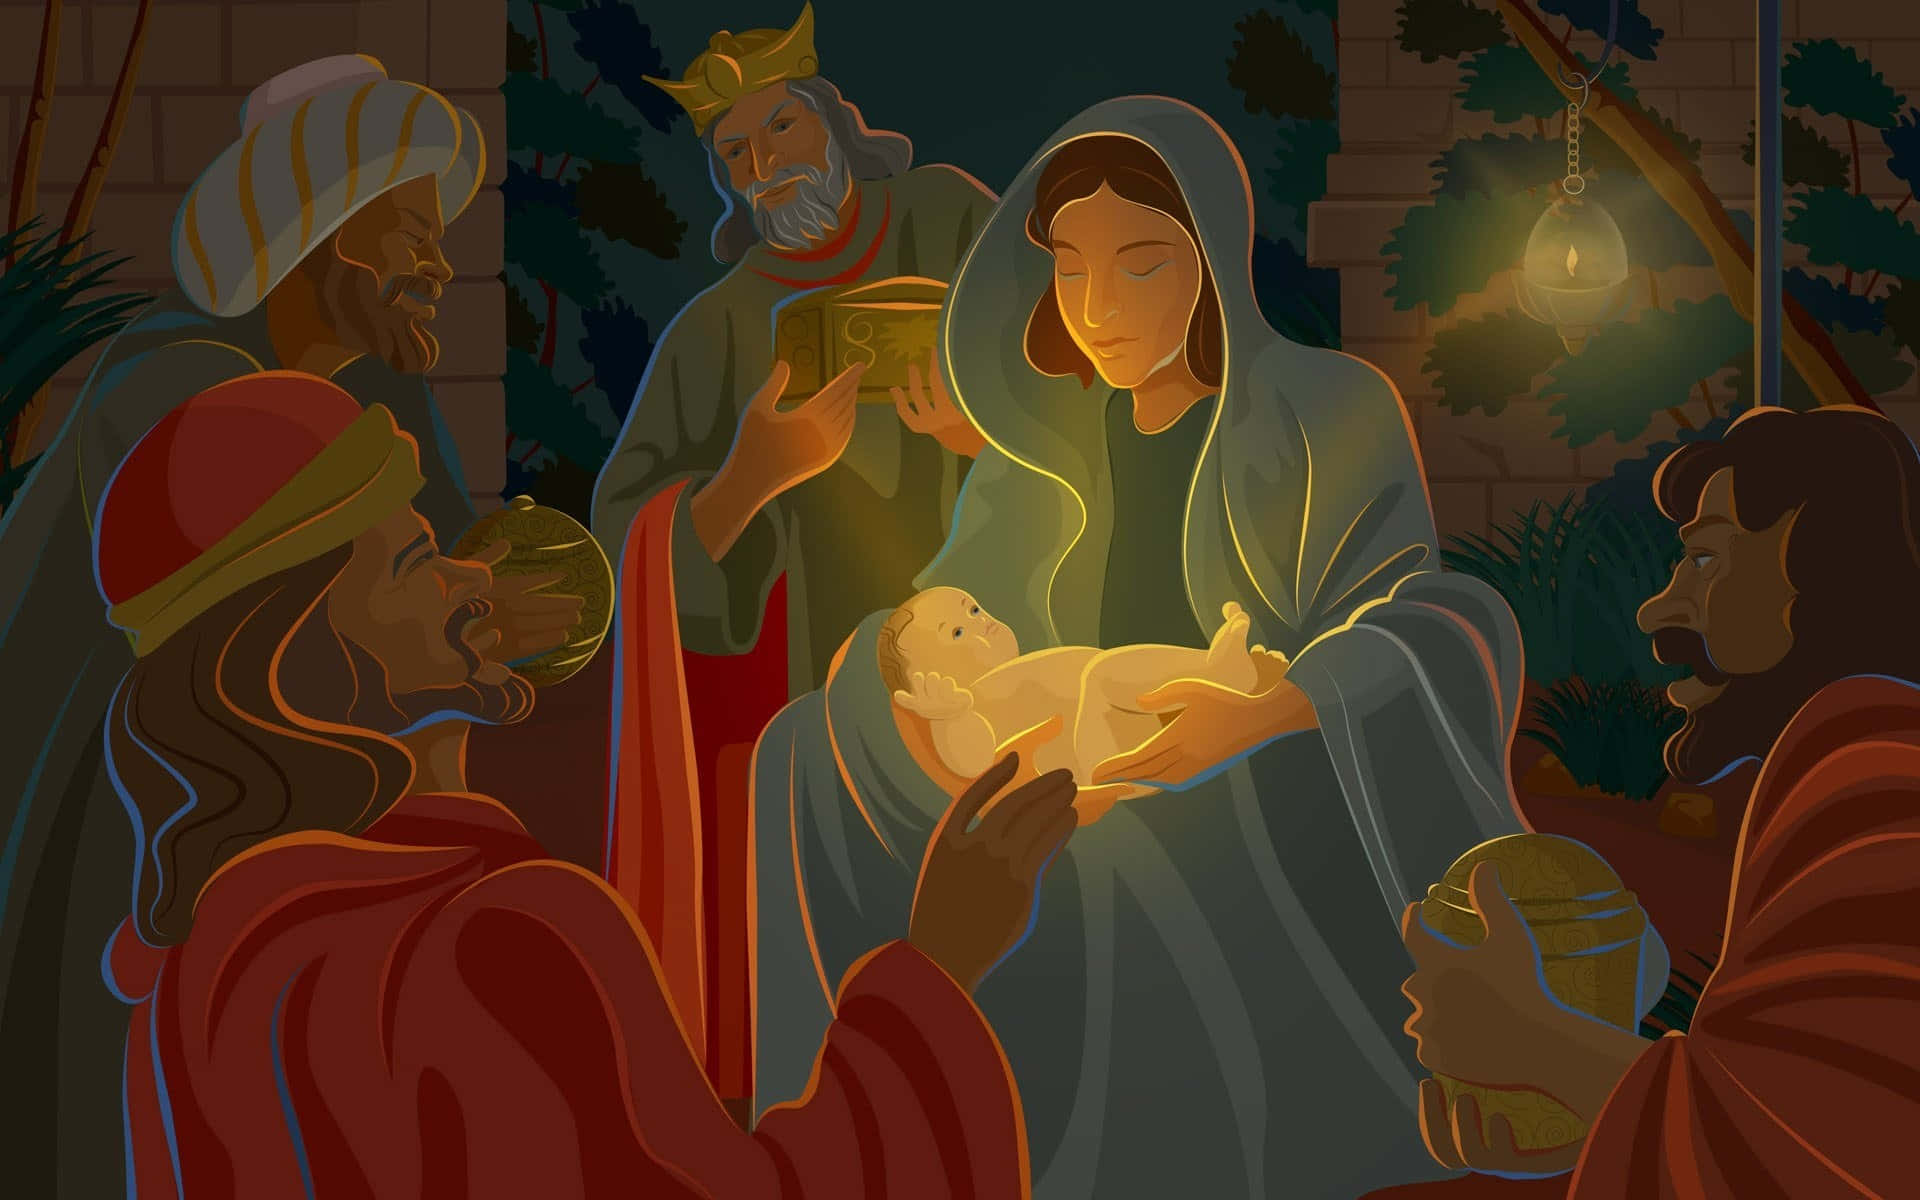 A Christmas Nativity Scene Illuminated At Night